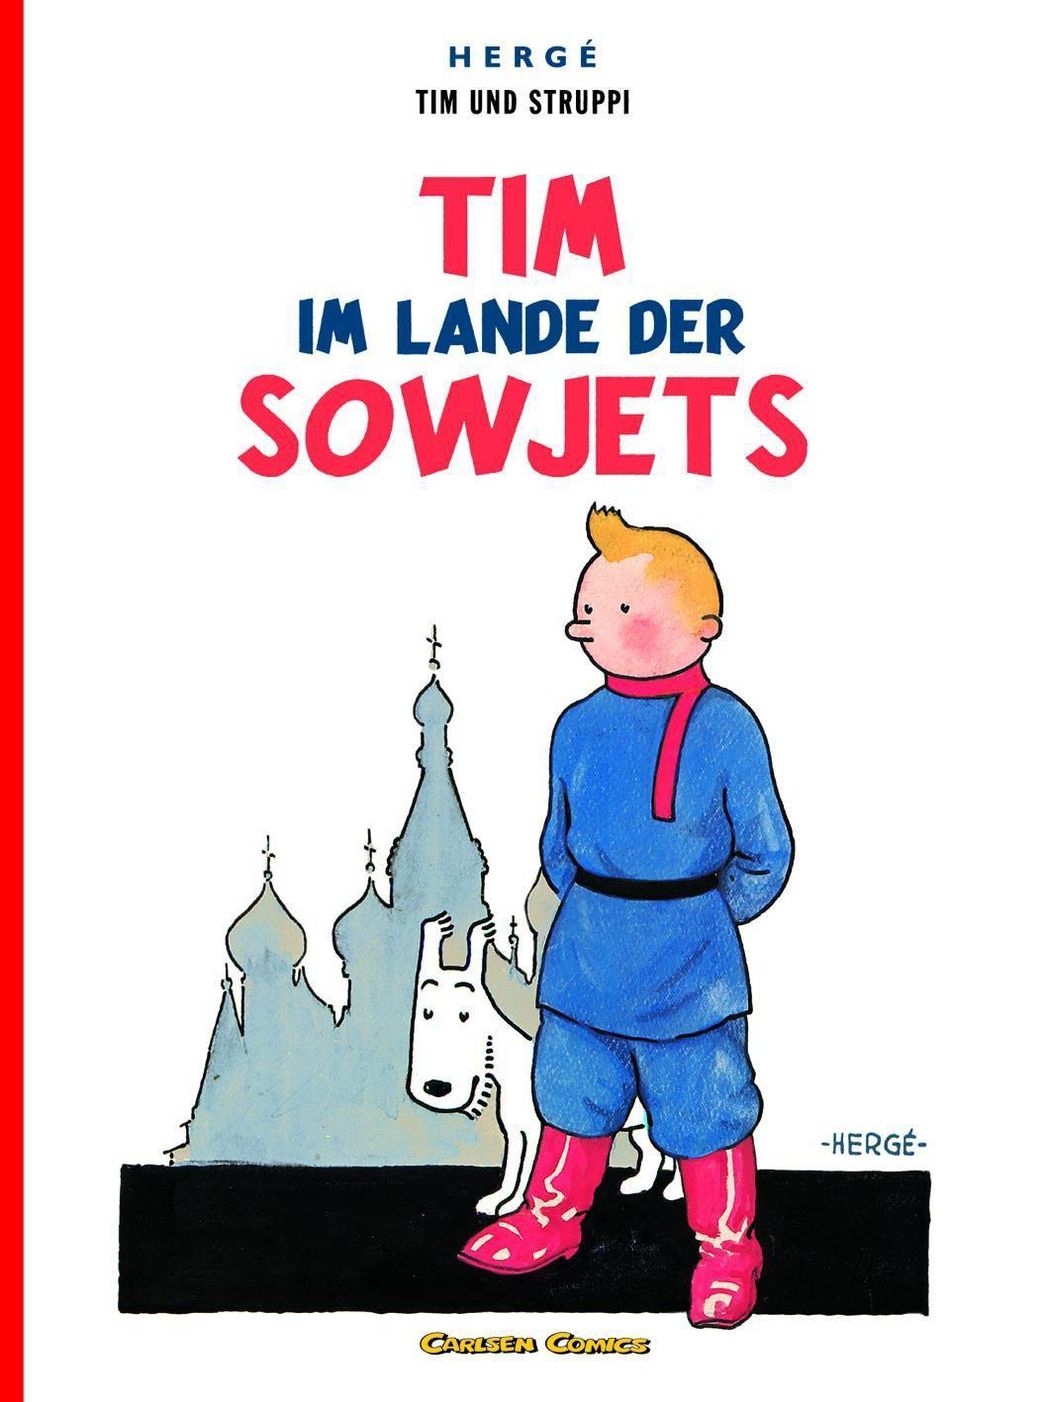 Tim und Struppi - Tim im Lande der Sowjets Buch - Weltbild.ch